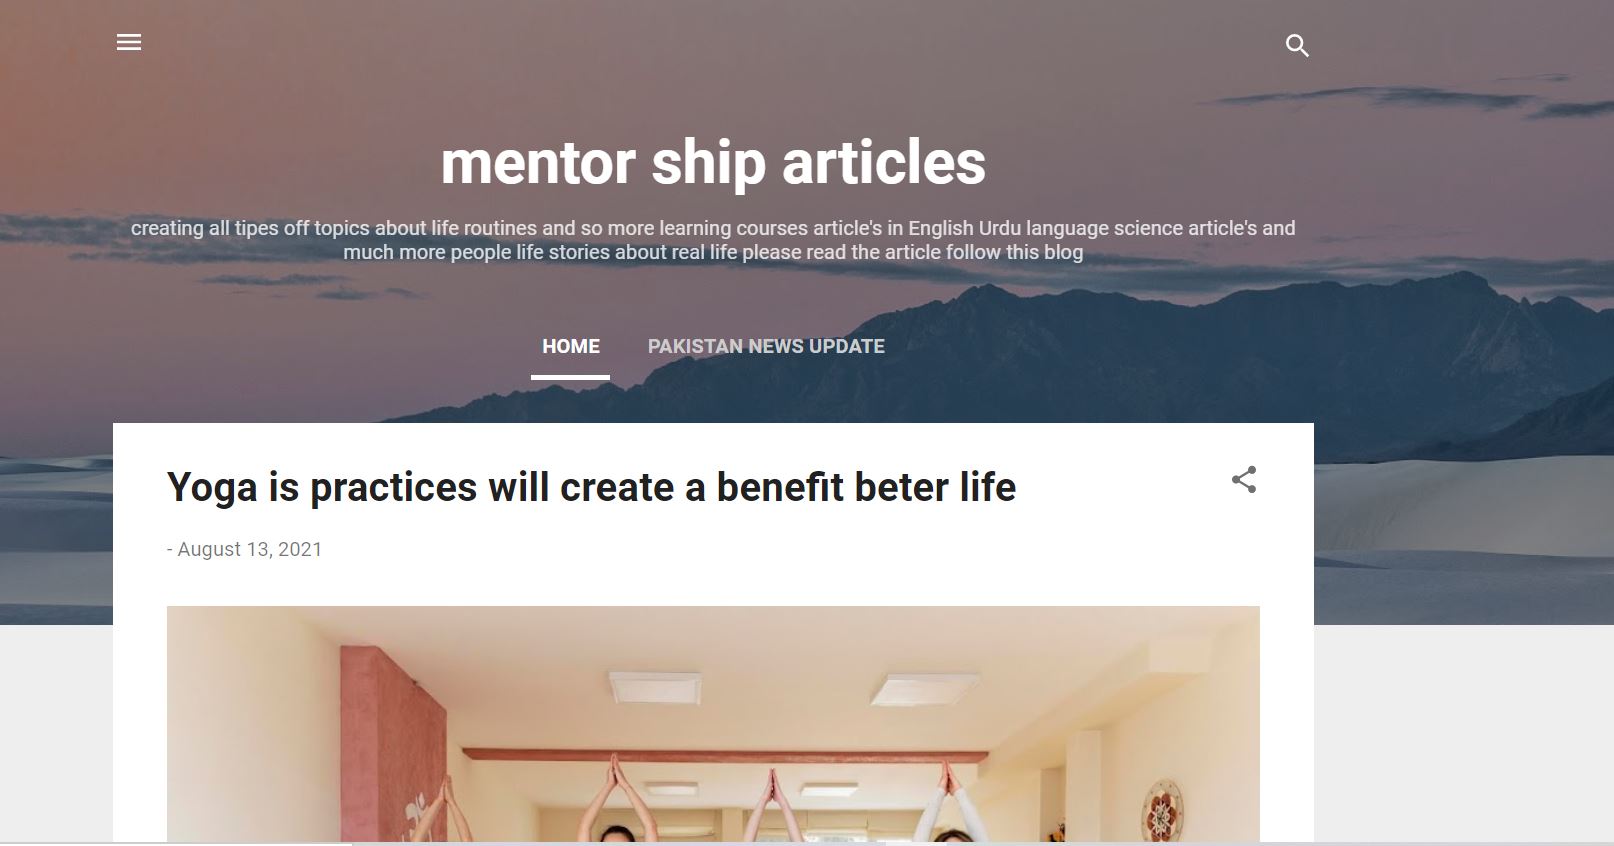 Mentor ship articles